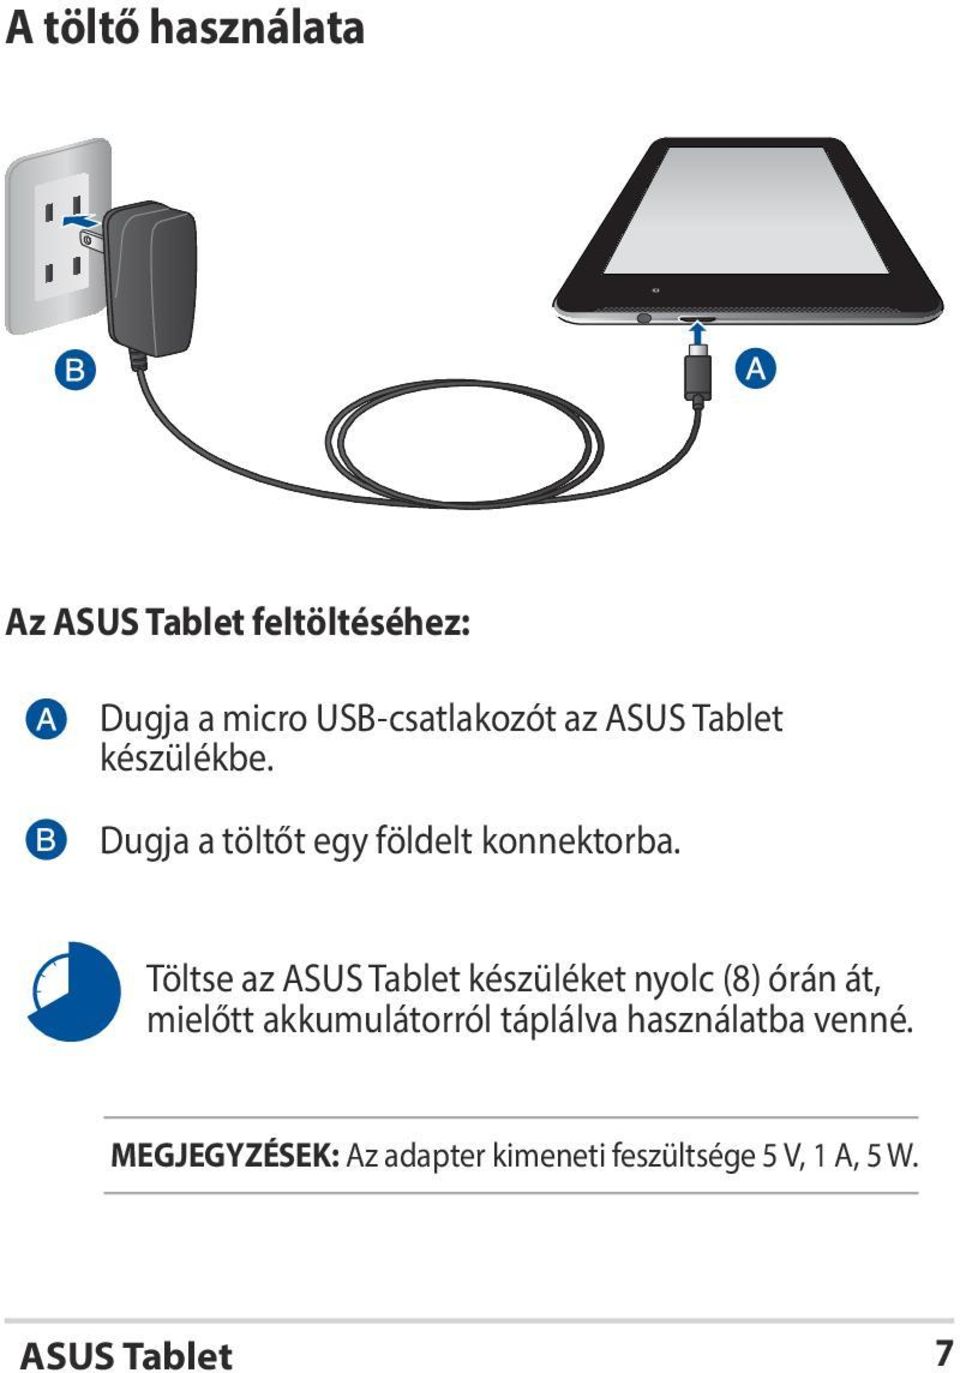 Töltse az ASUS Tablet készüléket nyolc (8) órán át, mielőtt akkumulátorról